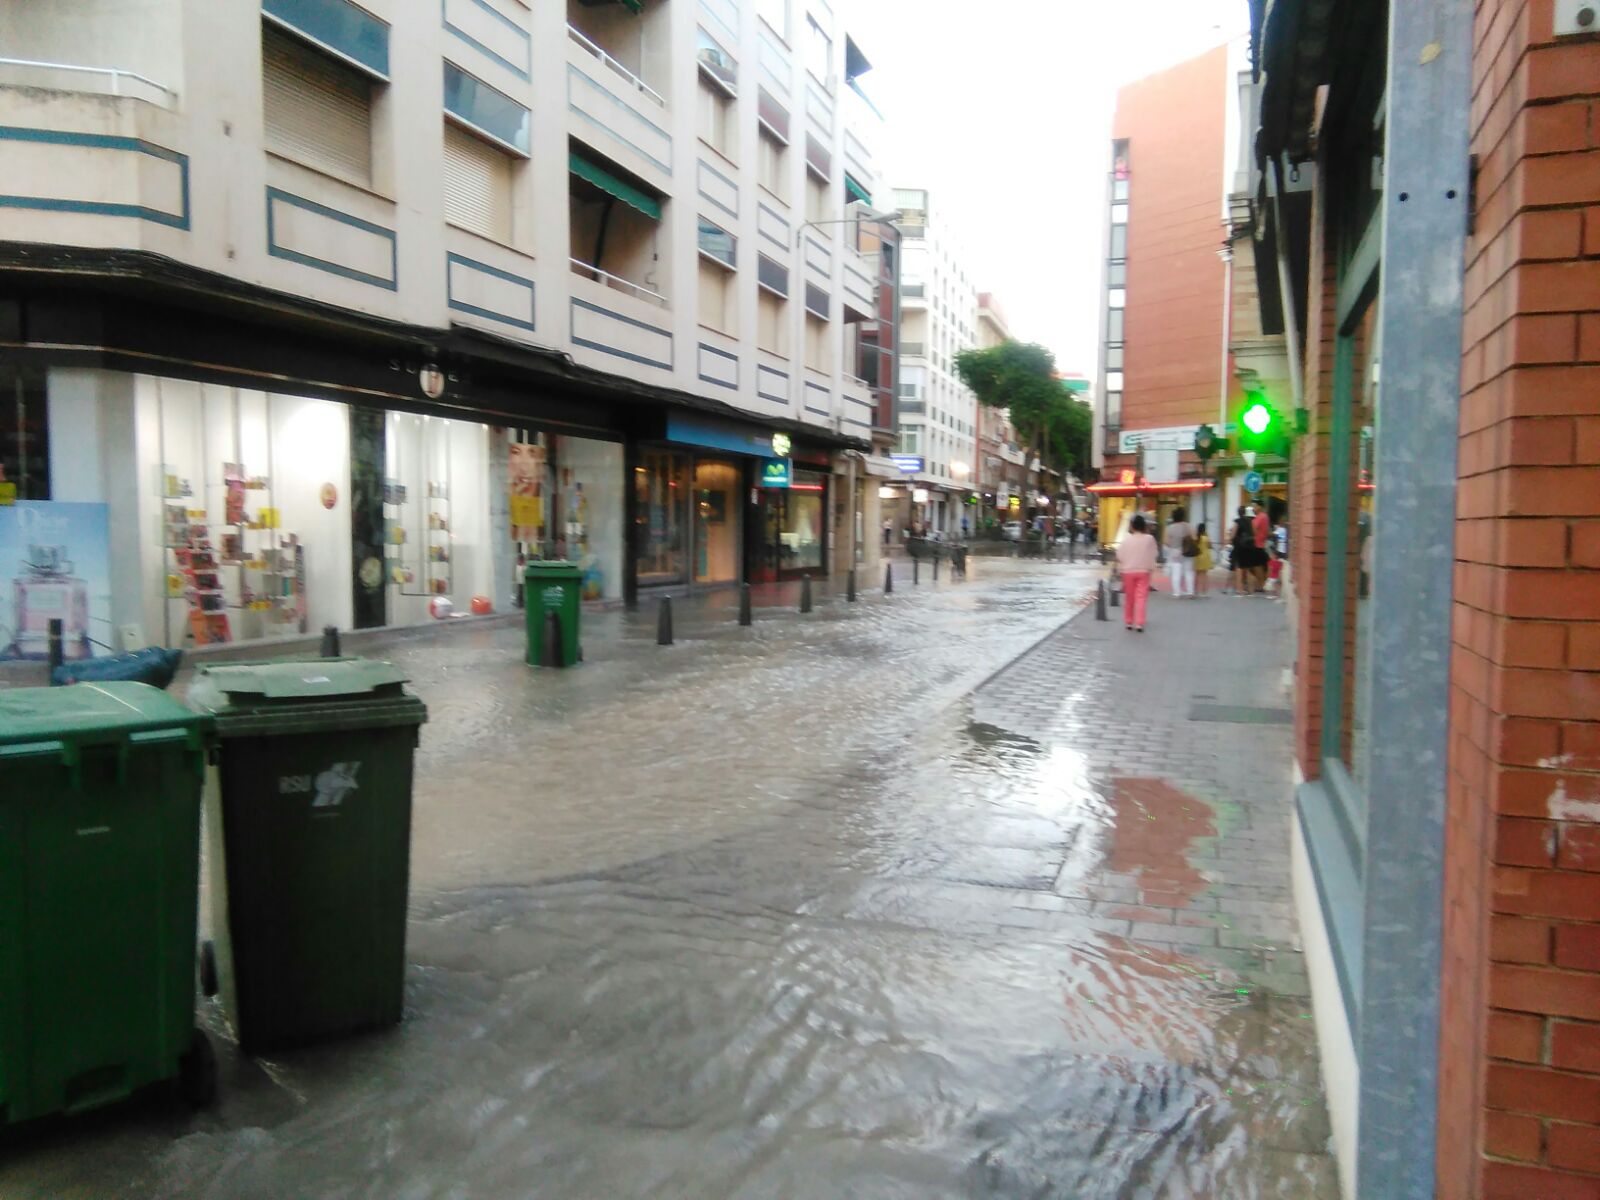 La rotura de una tubería en la Calle Maria Cristina de Ciudad Real inunda varios locales